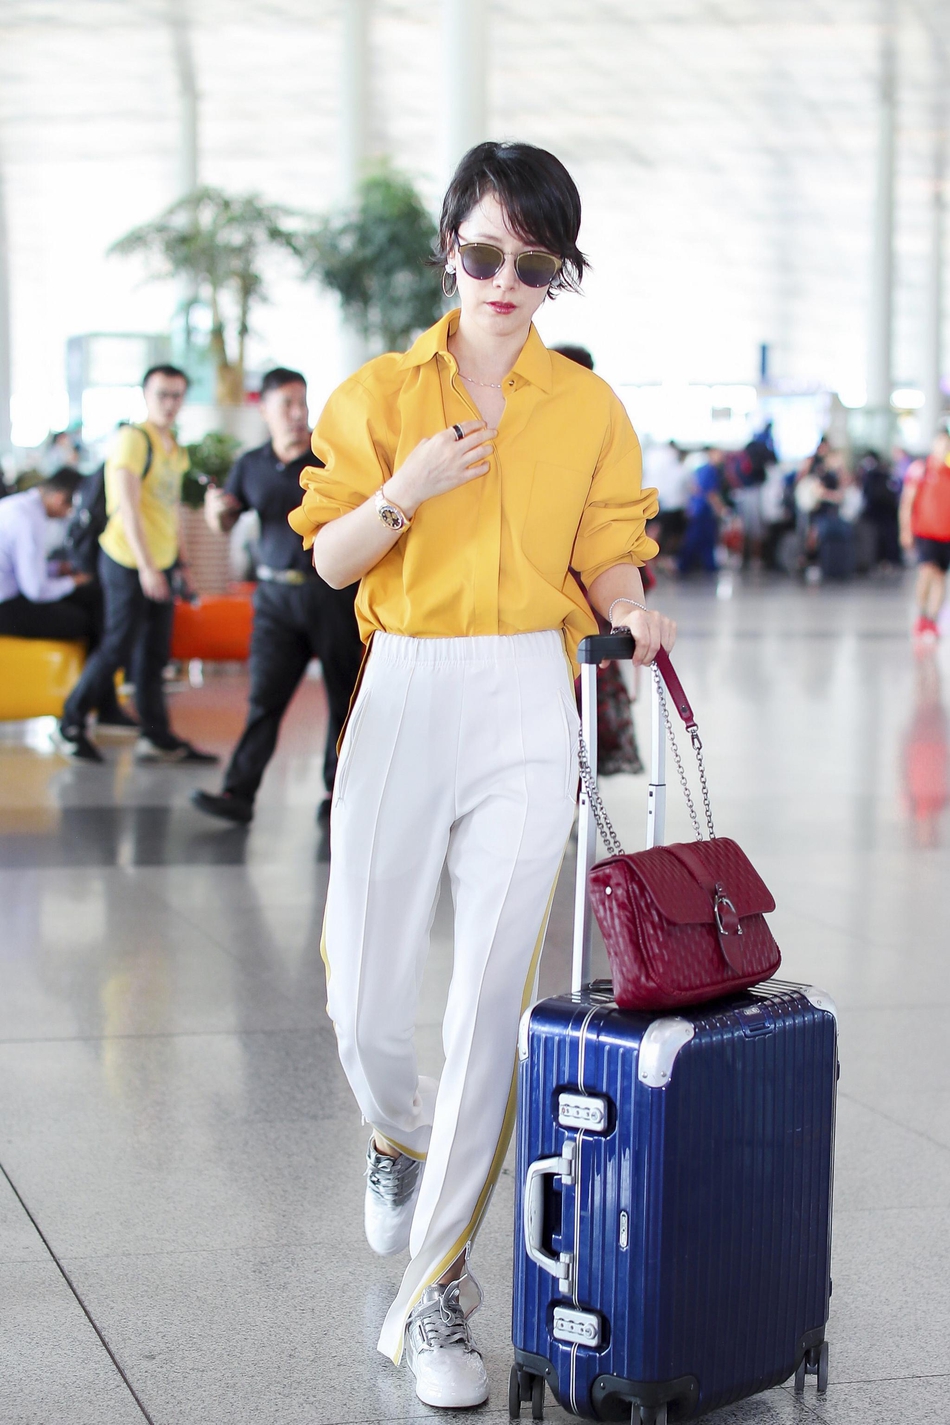 海清现身机场 琉璃黄套装尽显率性优雅